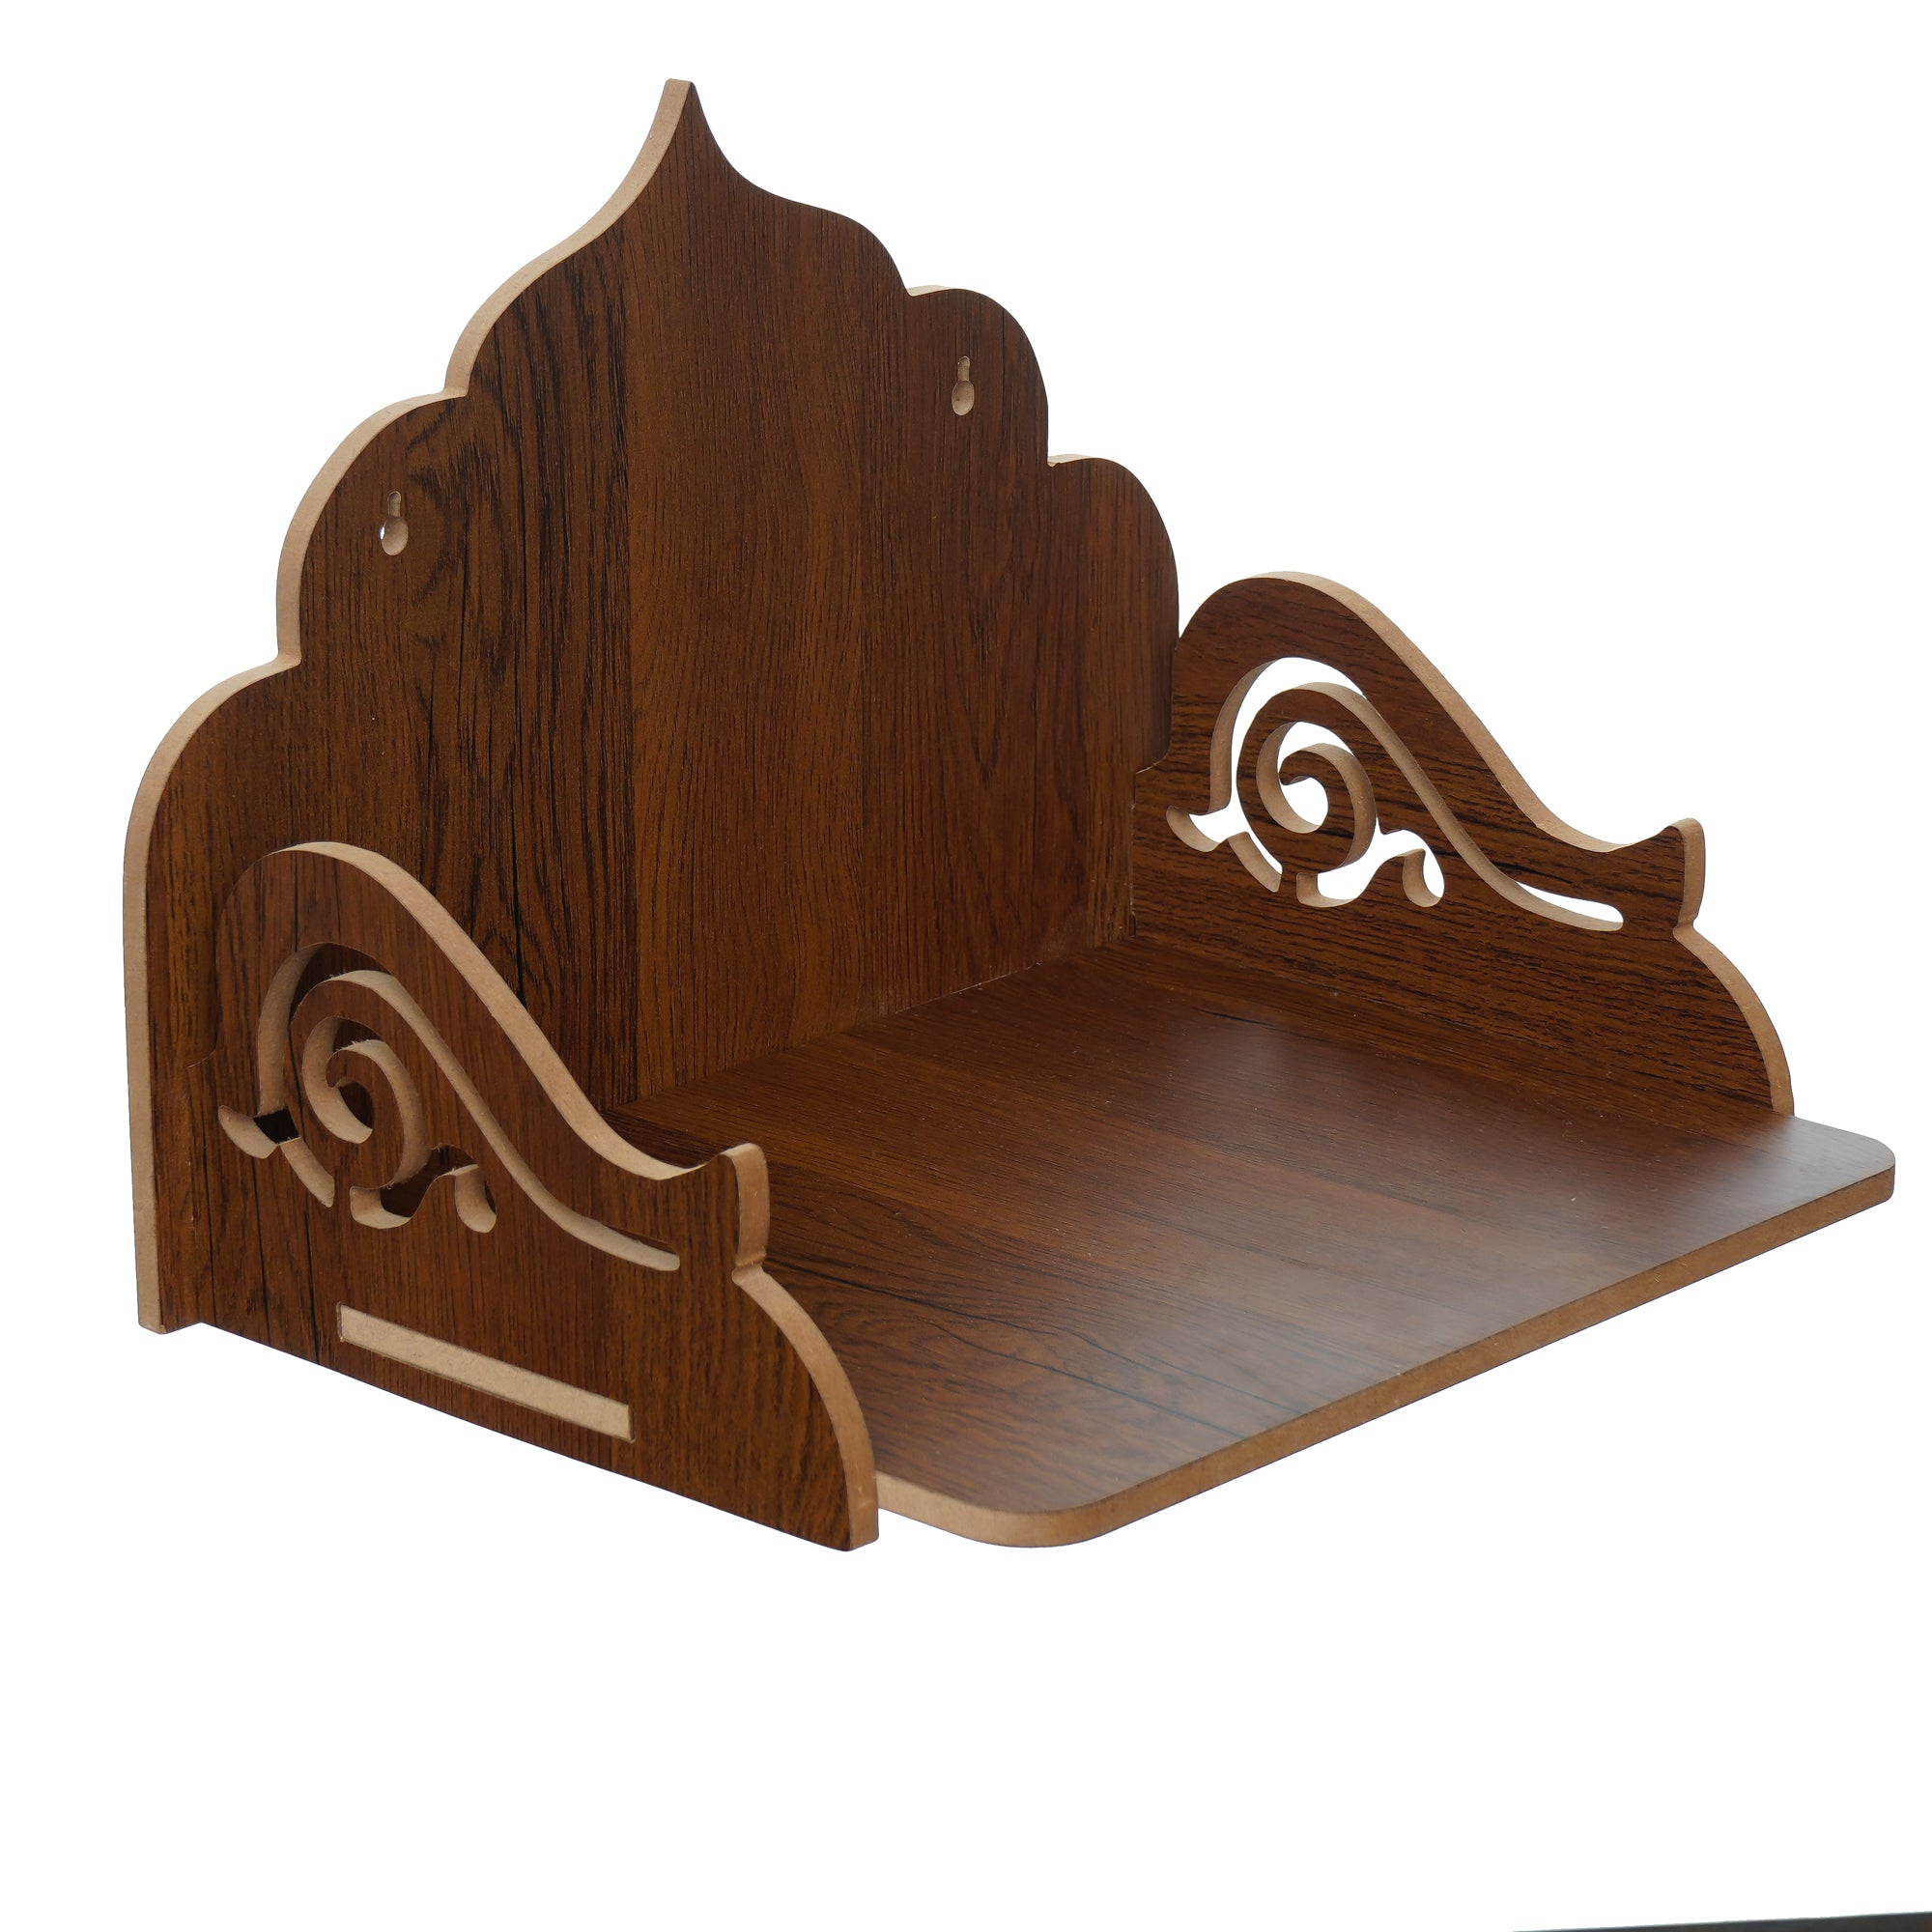 Designer Laminated Wood Pooja Temple/Mandir 2